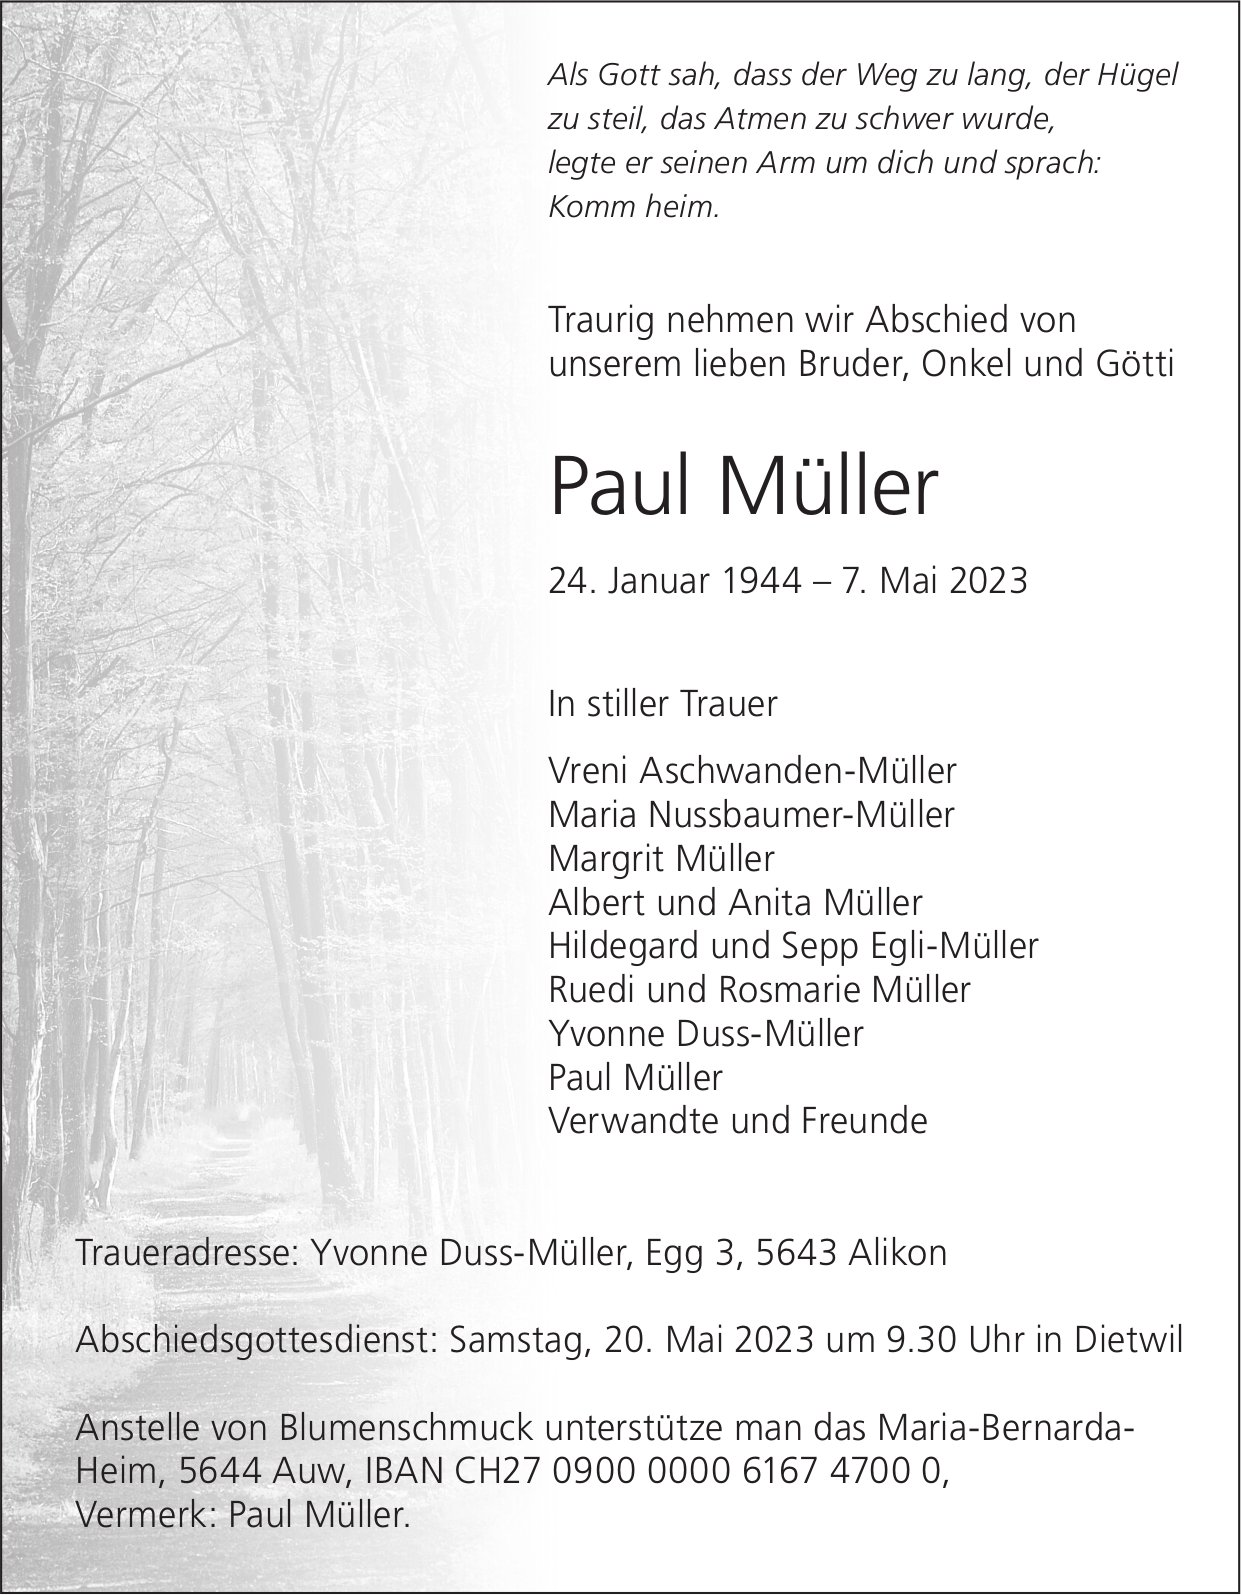 Müller Paul, Mai 2023 / TA